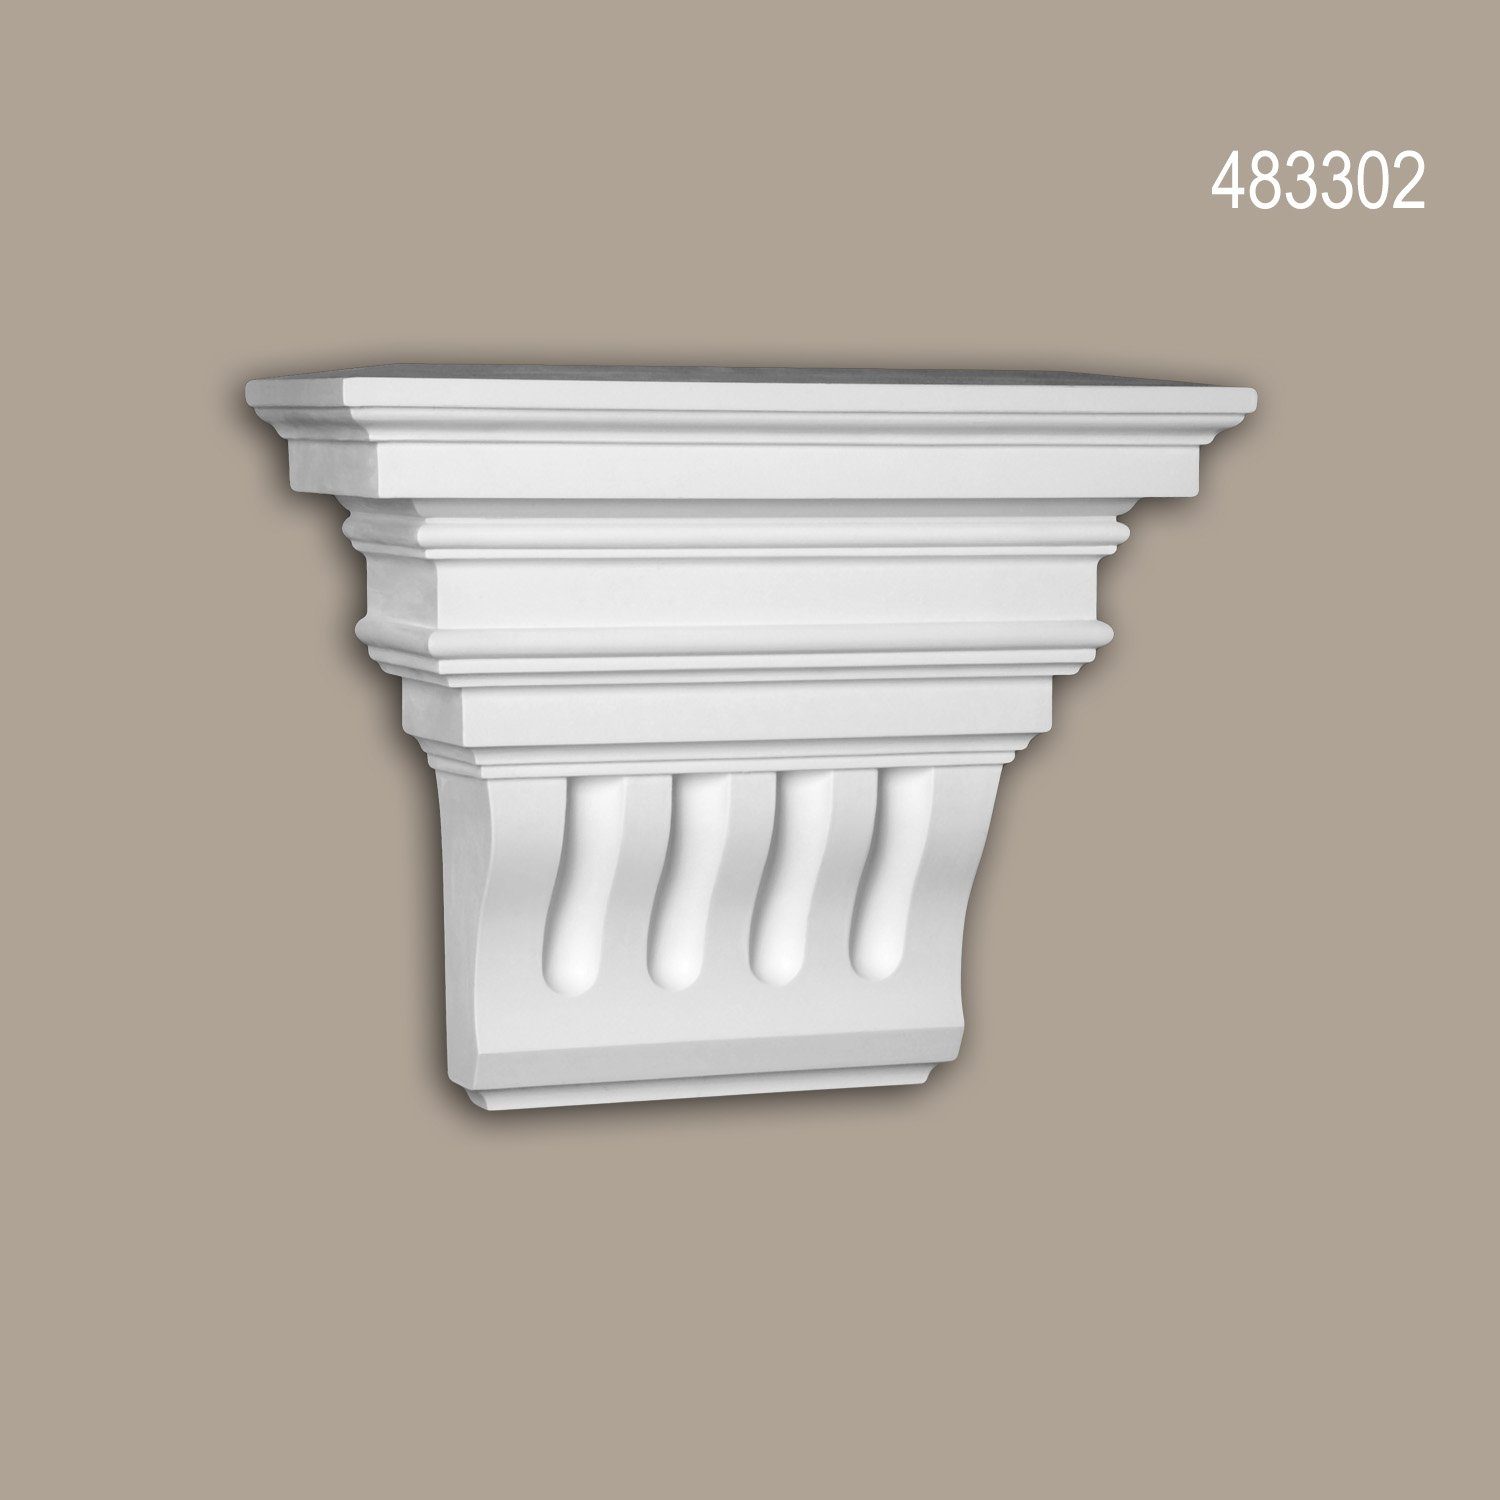 Stil: Zierelement, Wanddekoobjekt Außenstuck, St., (Konsole, Fassadenelement), vorgrundiert, 1 Korinthisch für 483302 Fassadendekoration, weiß, Profhome